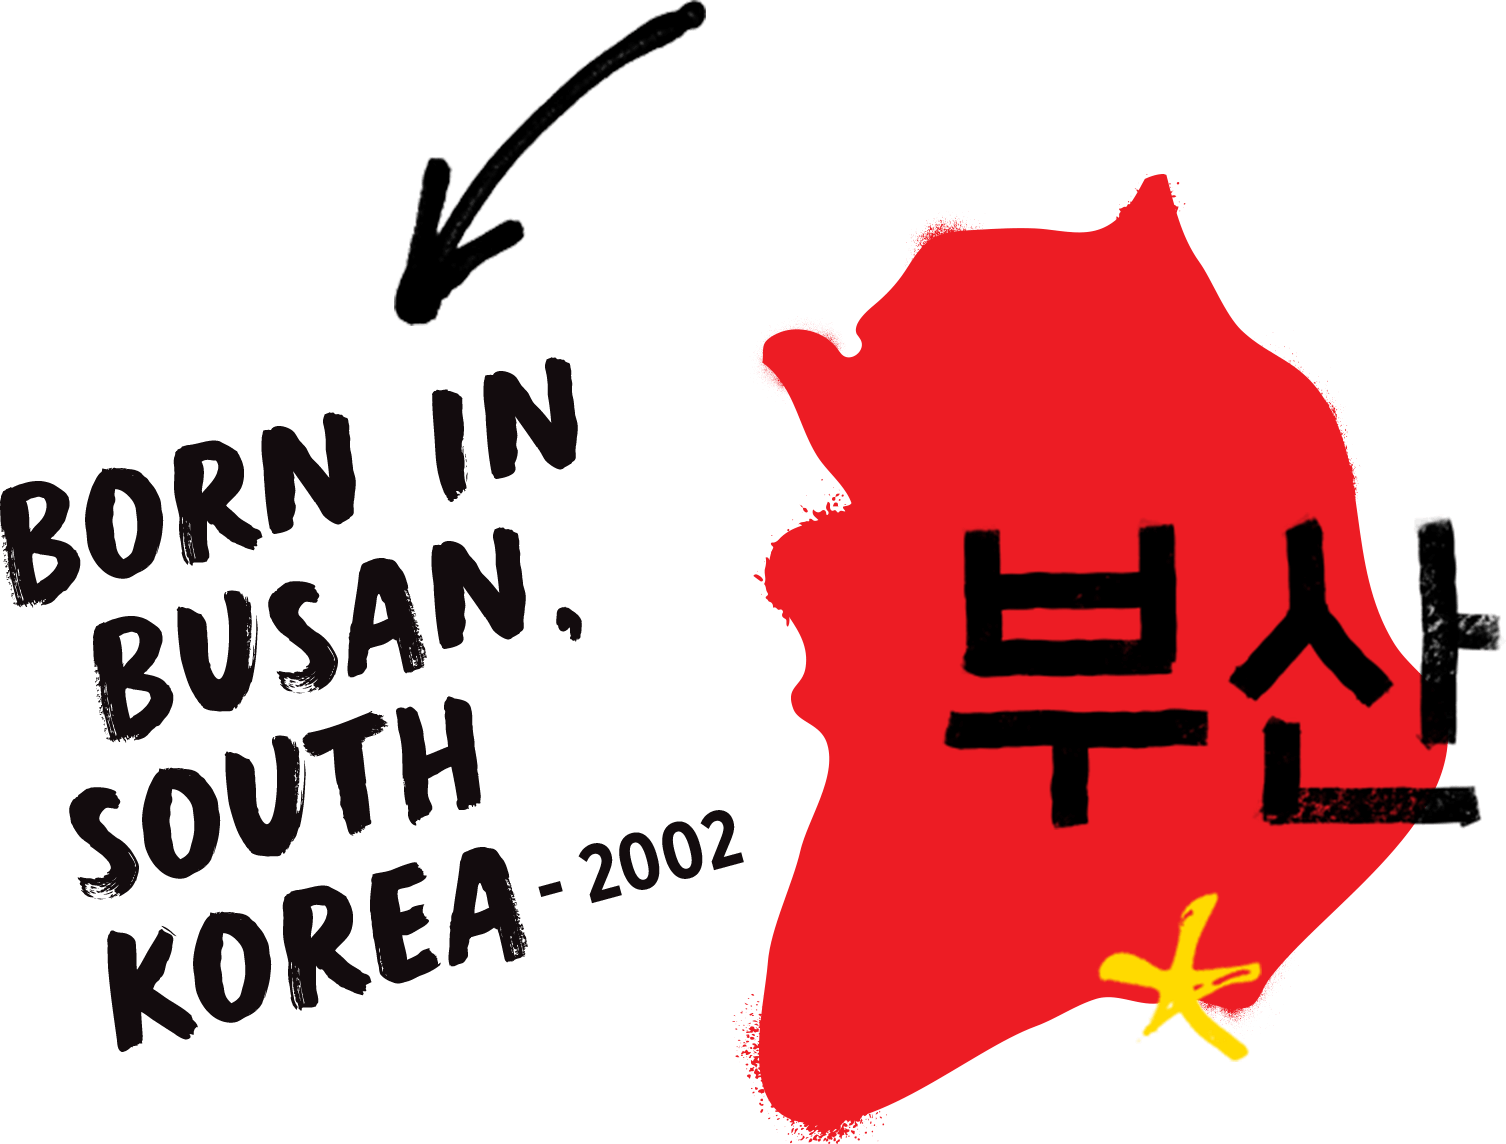 Born in Busan South Korea 2002